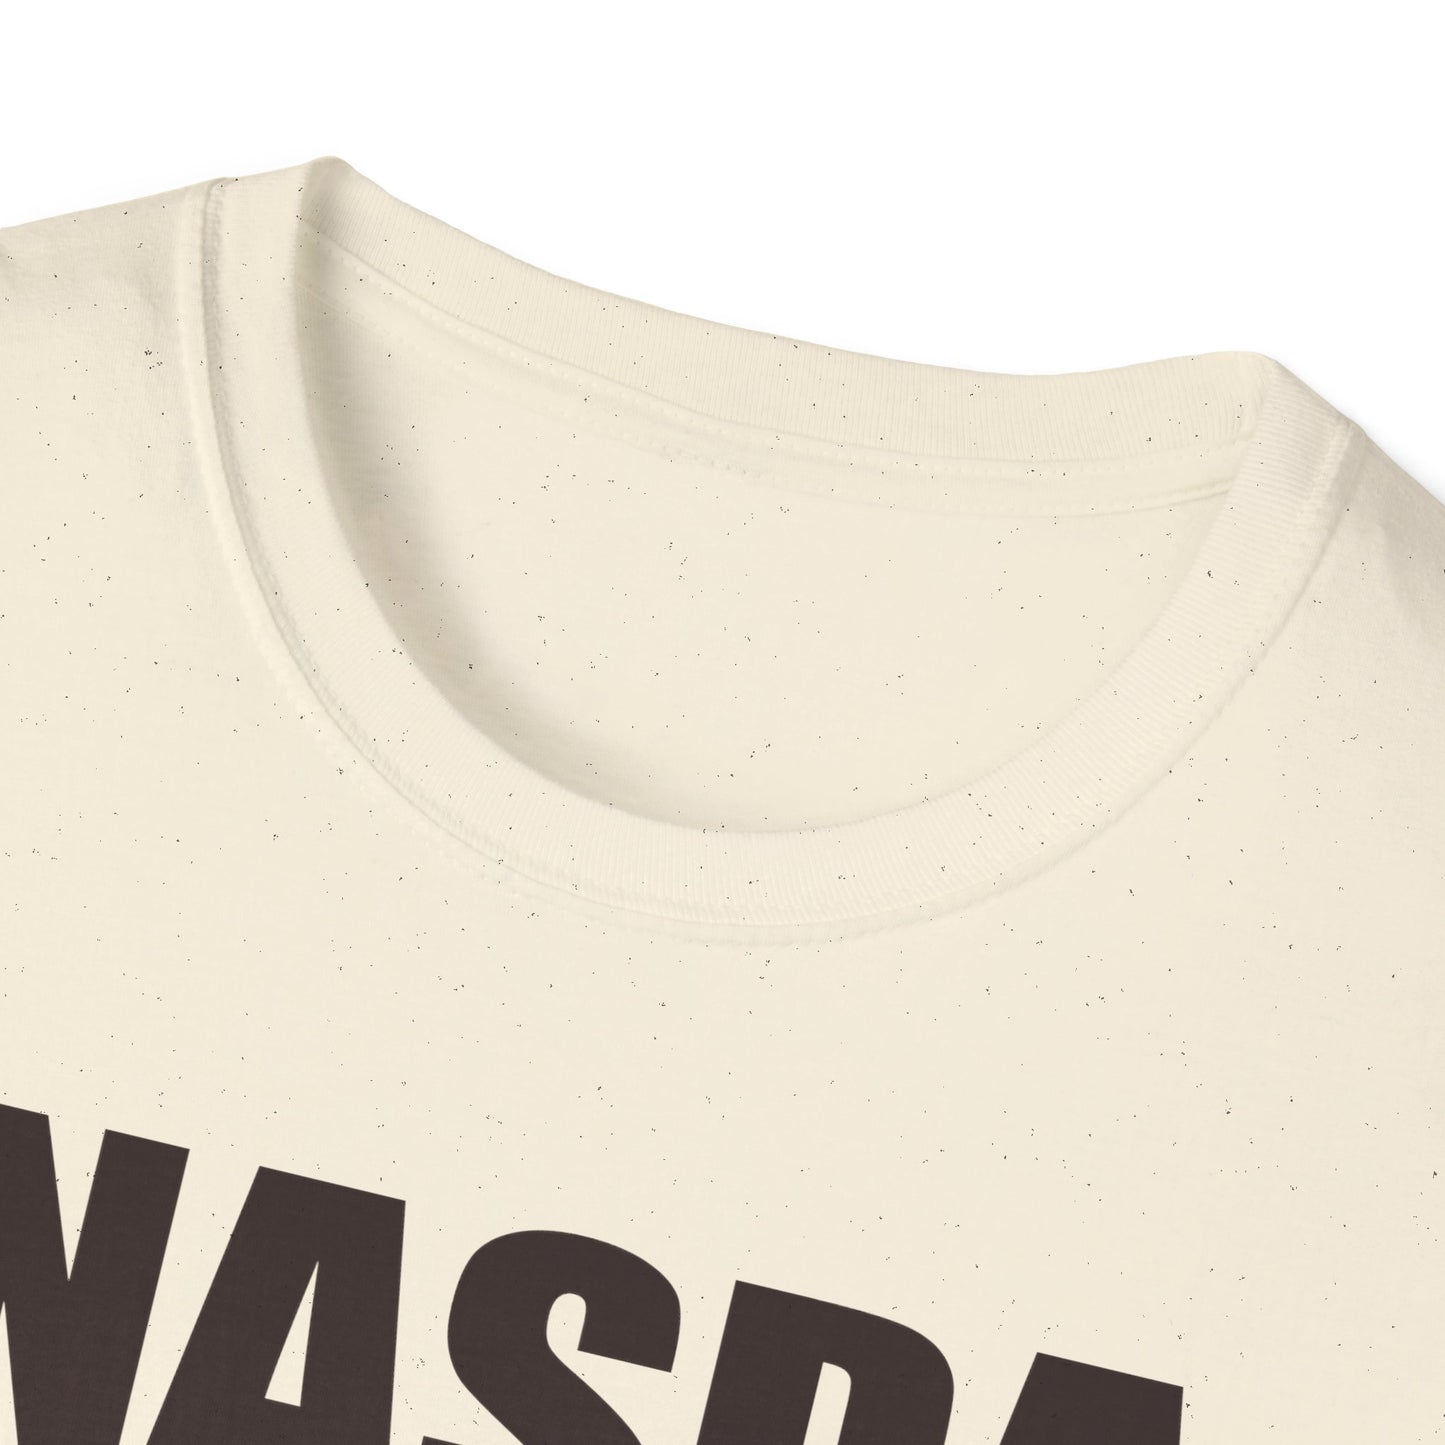 TREEING WALKER COONHOUND - NASDA  Unisex Softstyle T-Shirt